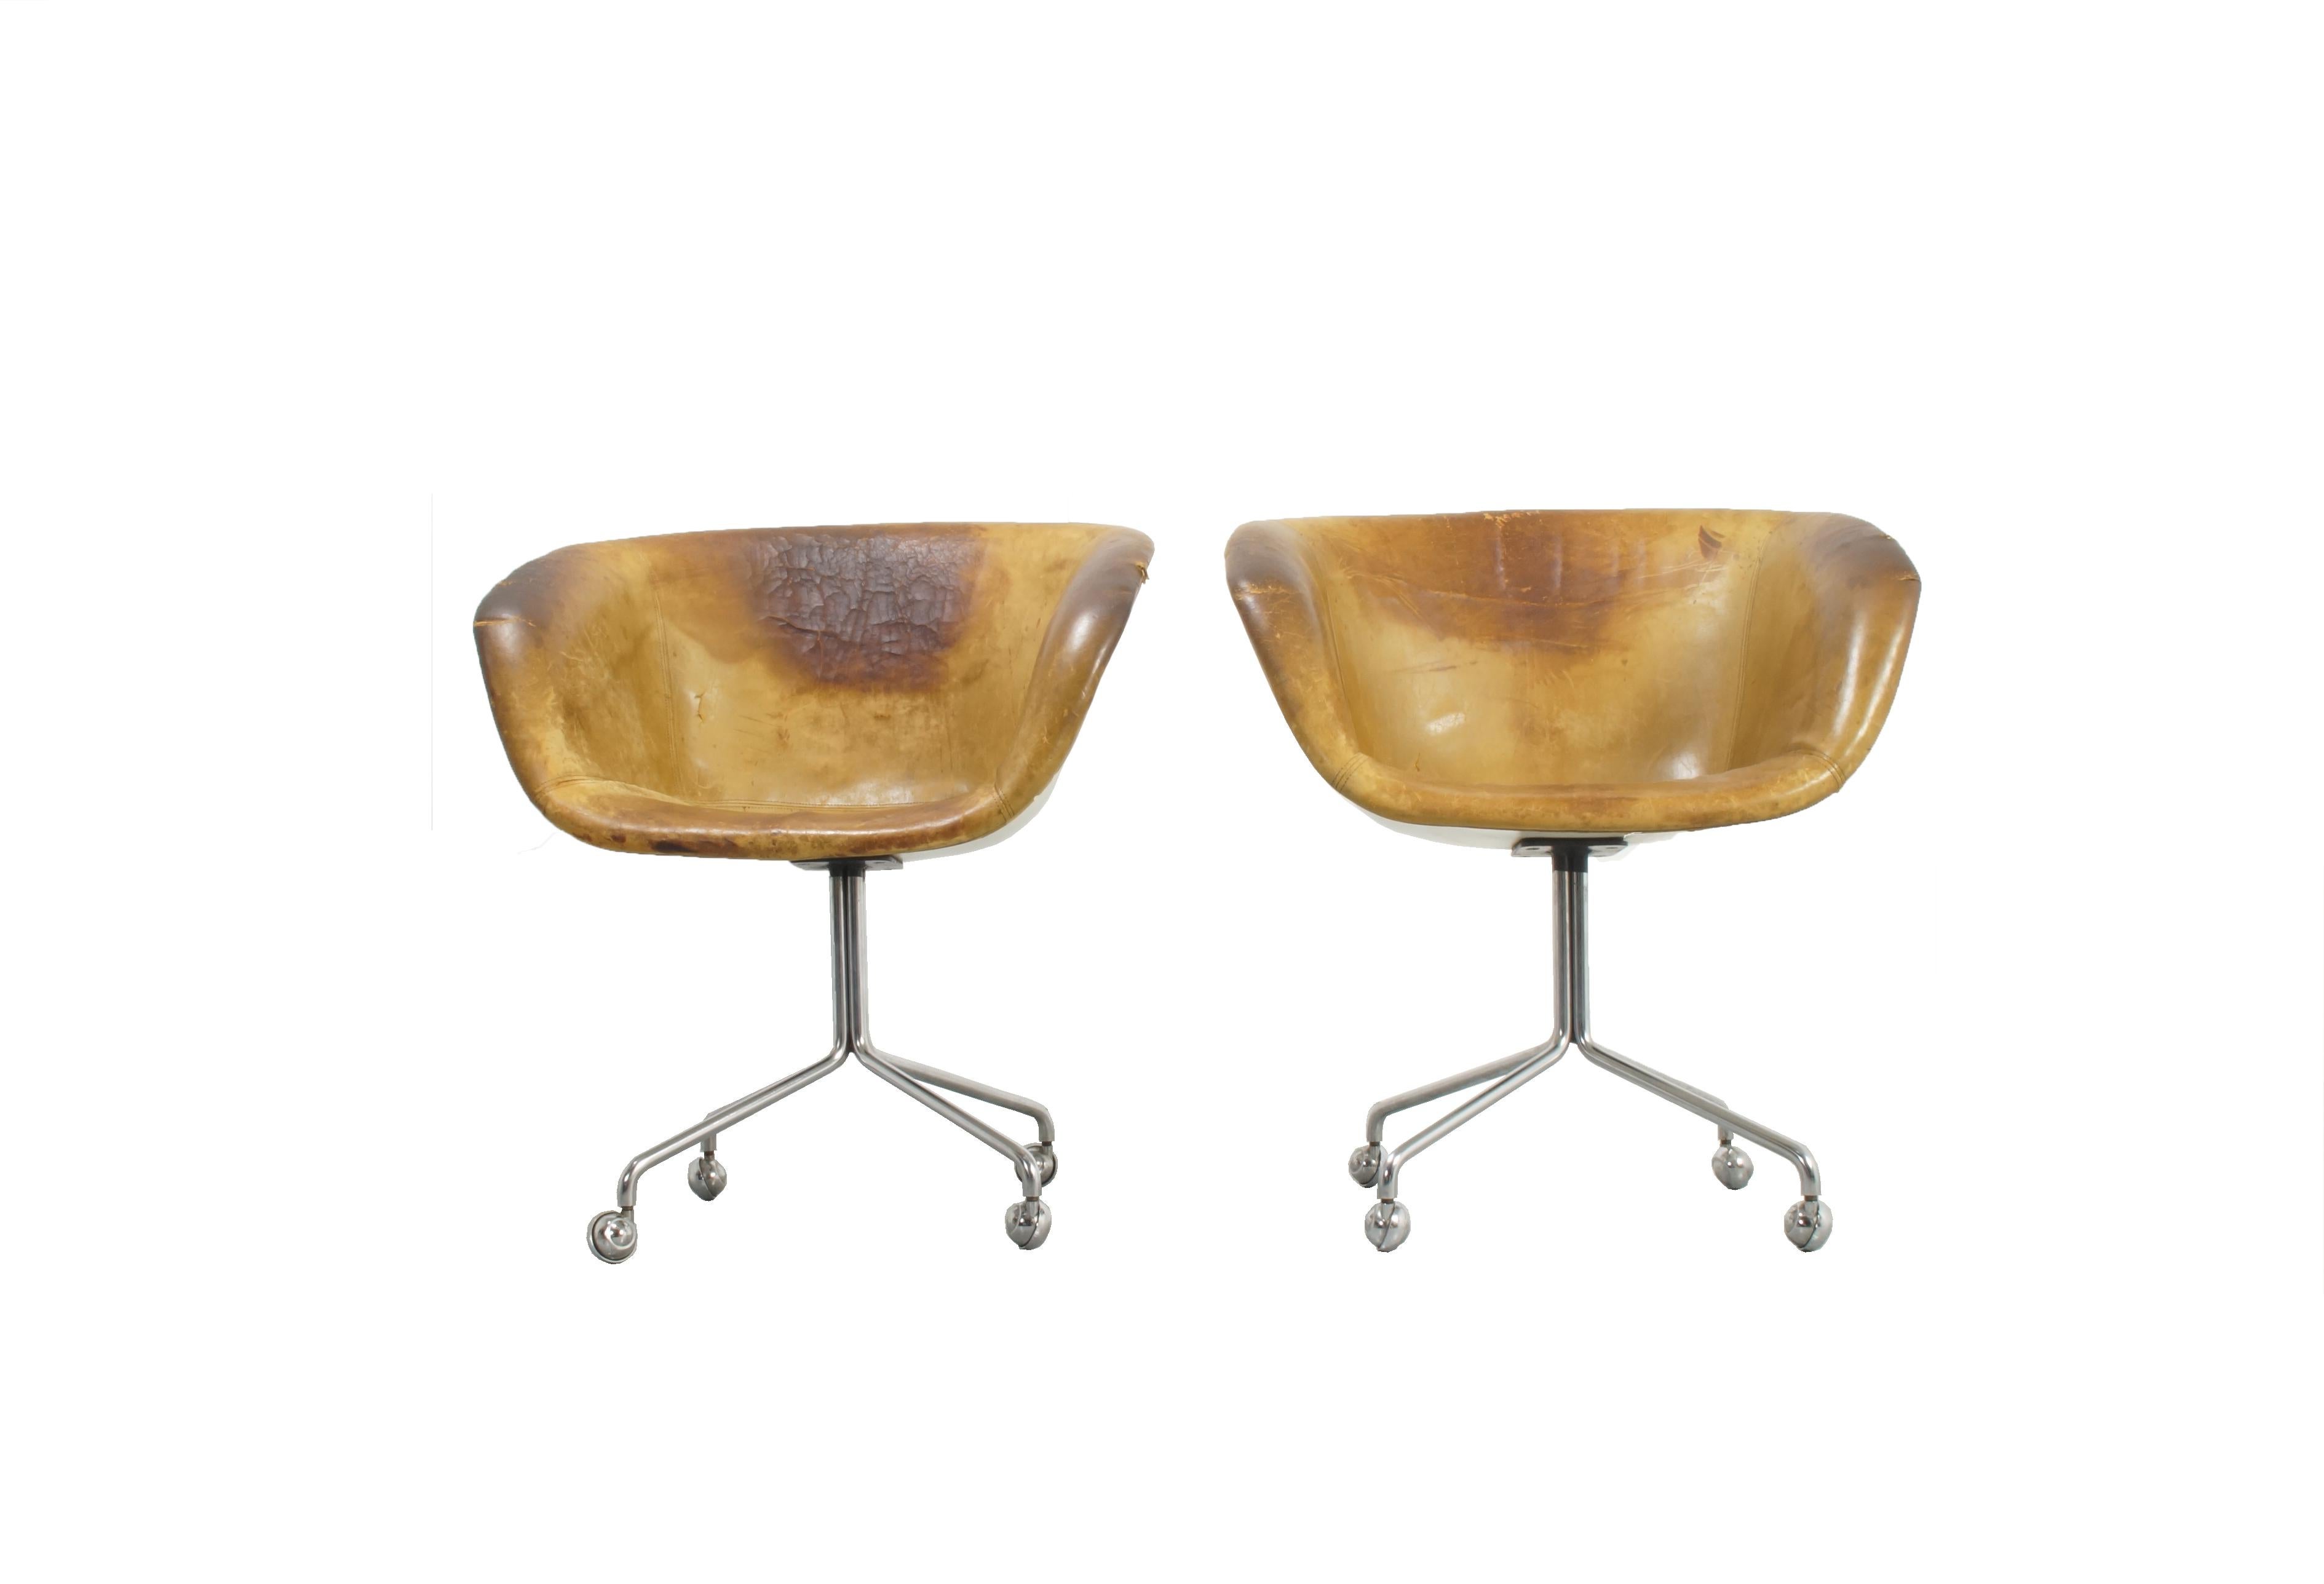 Fauteuils de direction en cuir rares, conçus par Horst W. Brüning en 1969

Deux chaises disponibles, prix par chaise.

La chaise est un prototype et, selon l'ancien directeur de la production de Kill International, seuls quelques échantillons